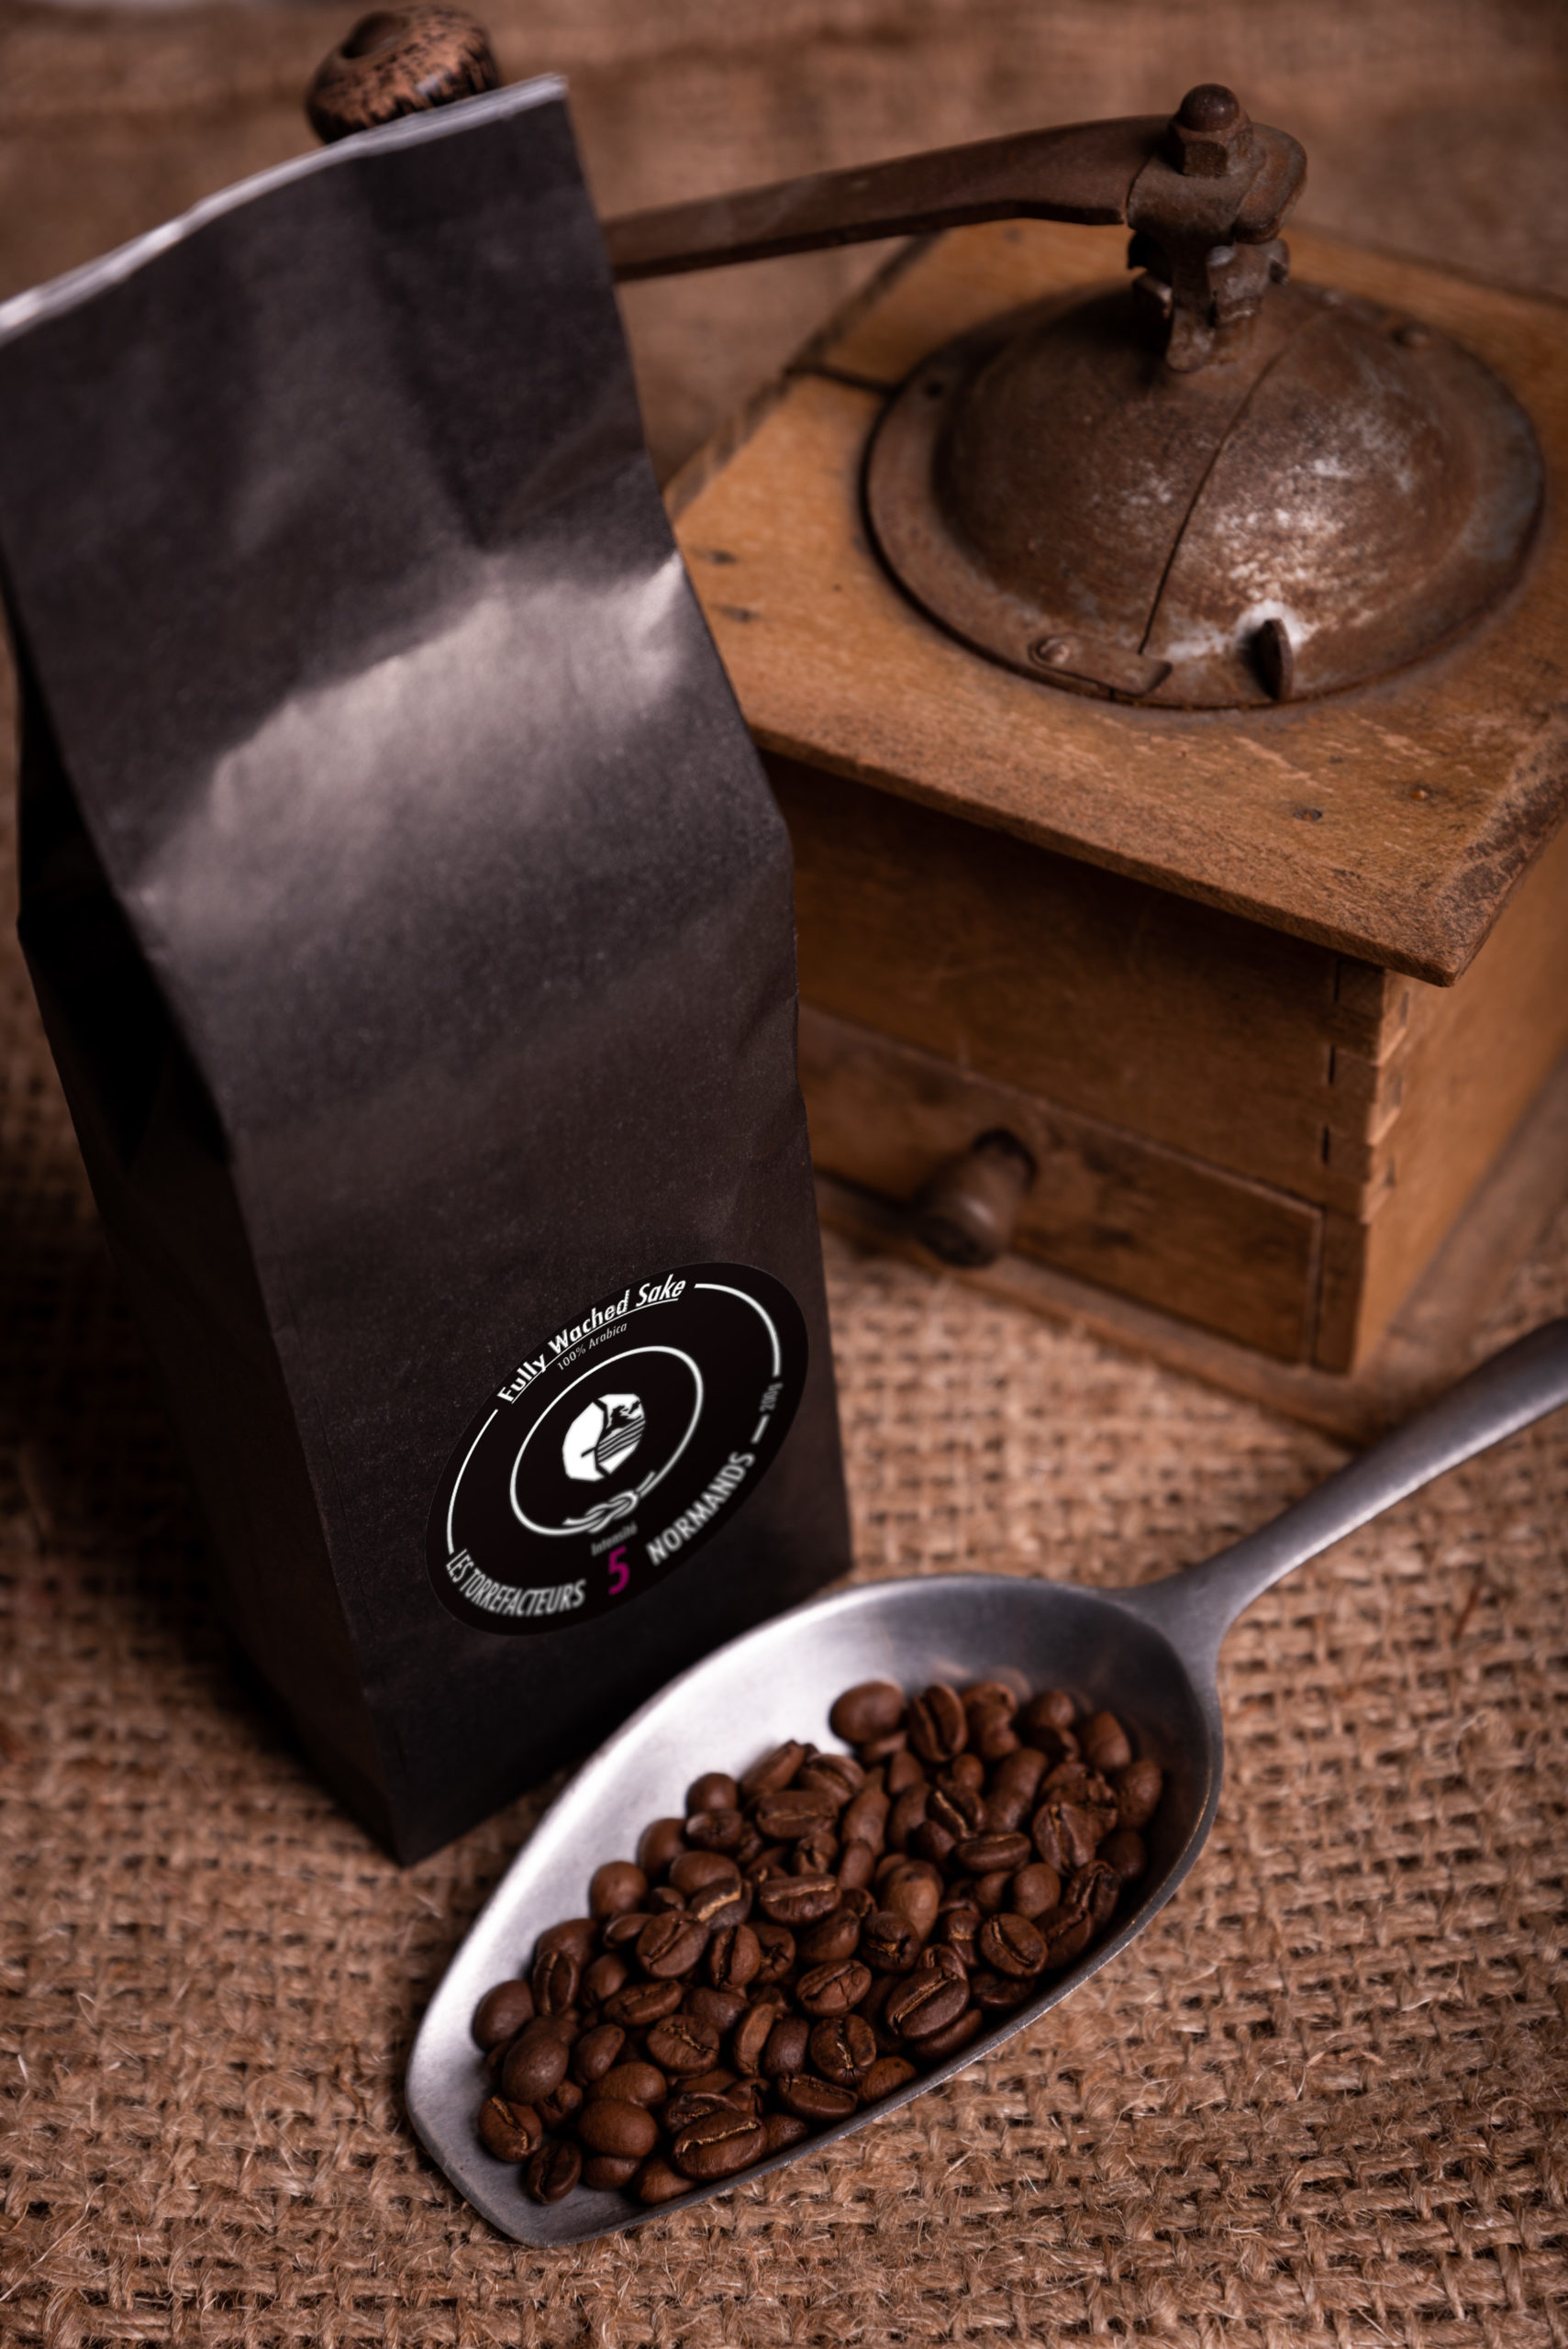 Achat au meilleur prix des cafés en grain, moulus, dosettes ou en capsules